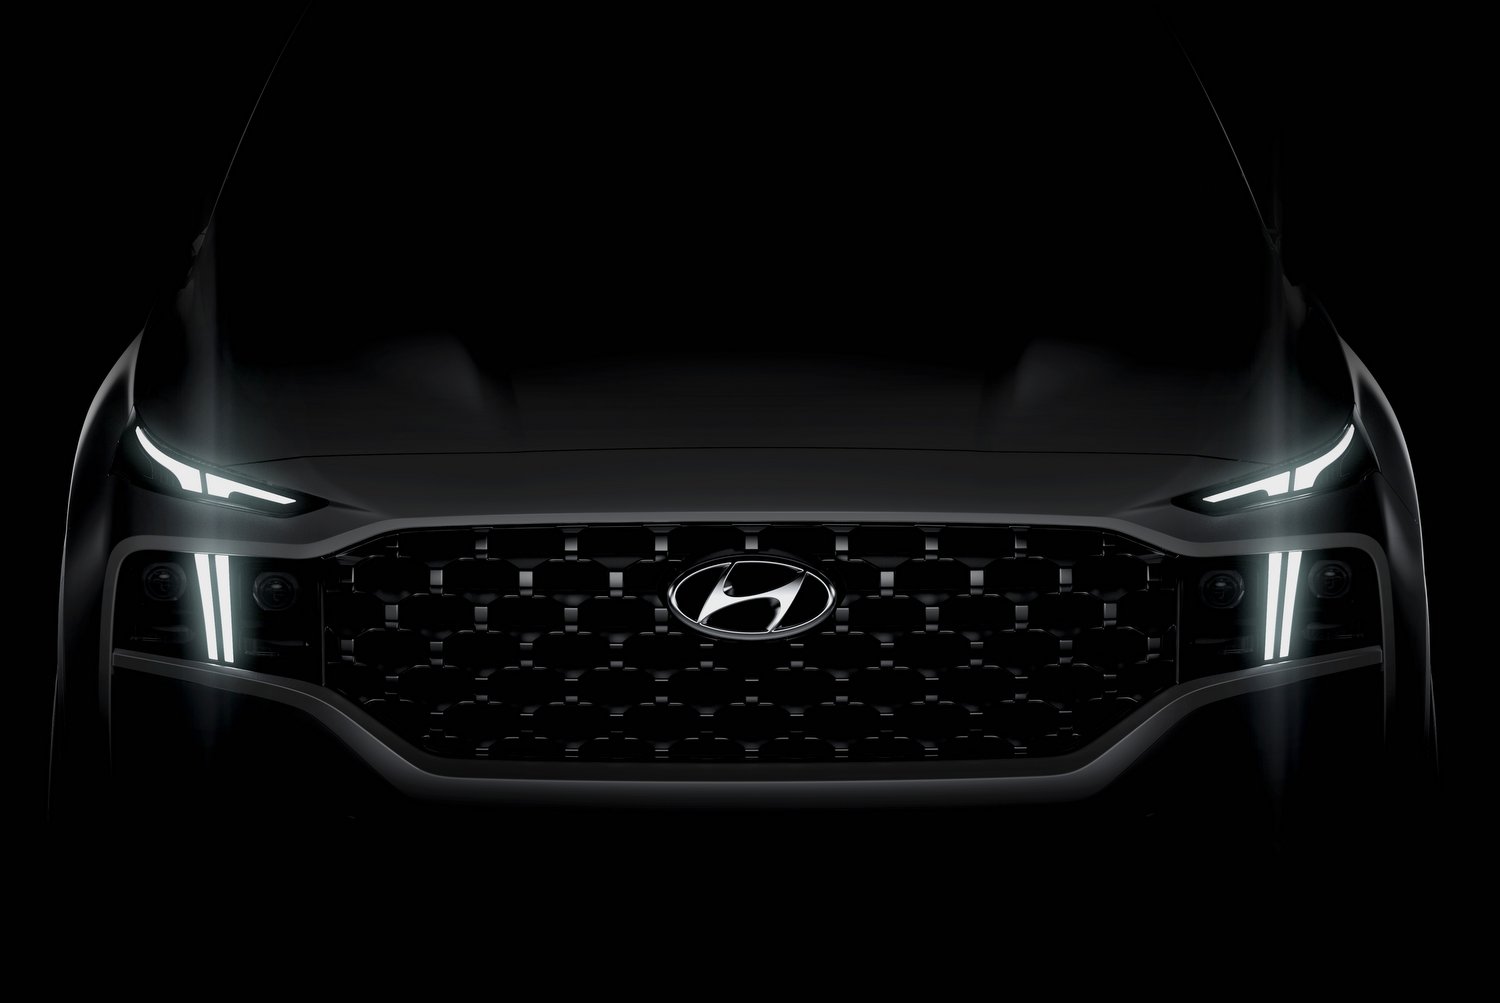 Dupla hibriddel újul meg a legnagyobb Hyundai 6